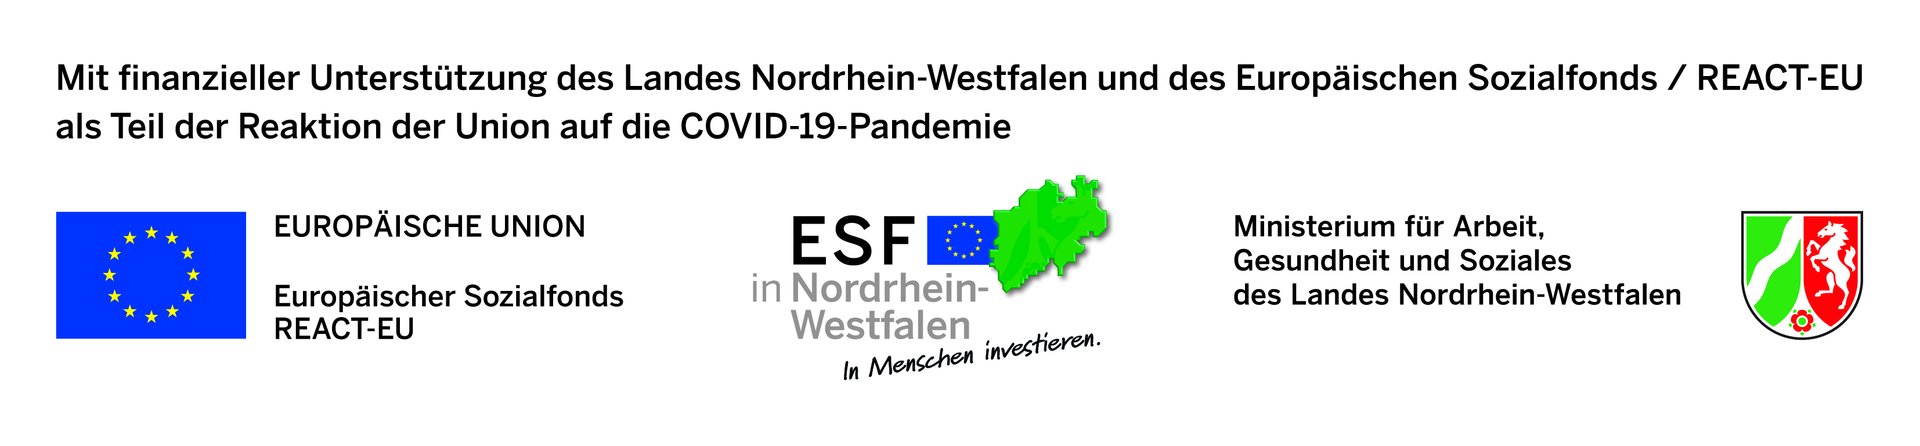 Mit finanzeller Unterstützung des Landes NRW-Europäischer Sozialfonds REACT-EU